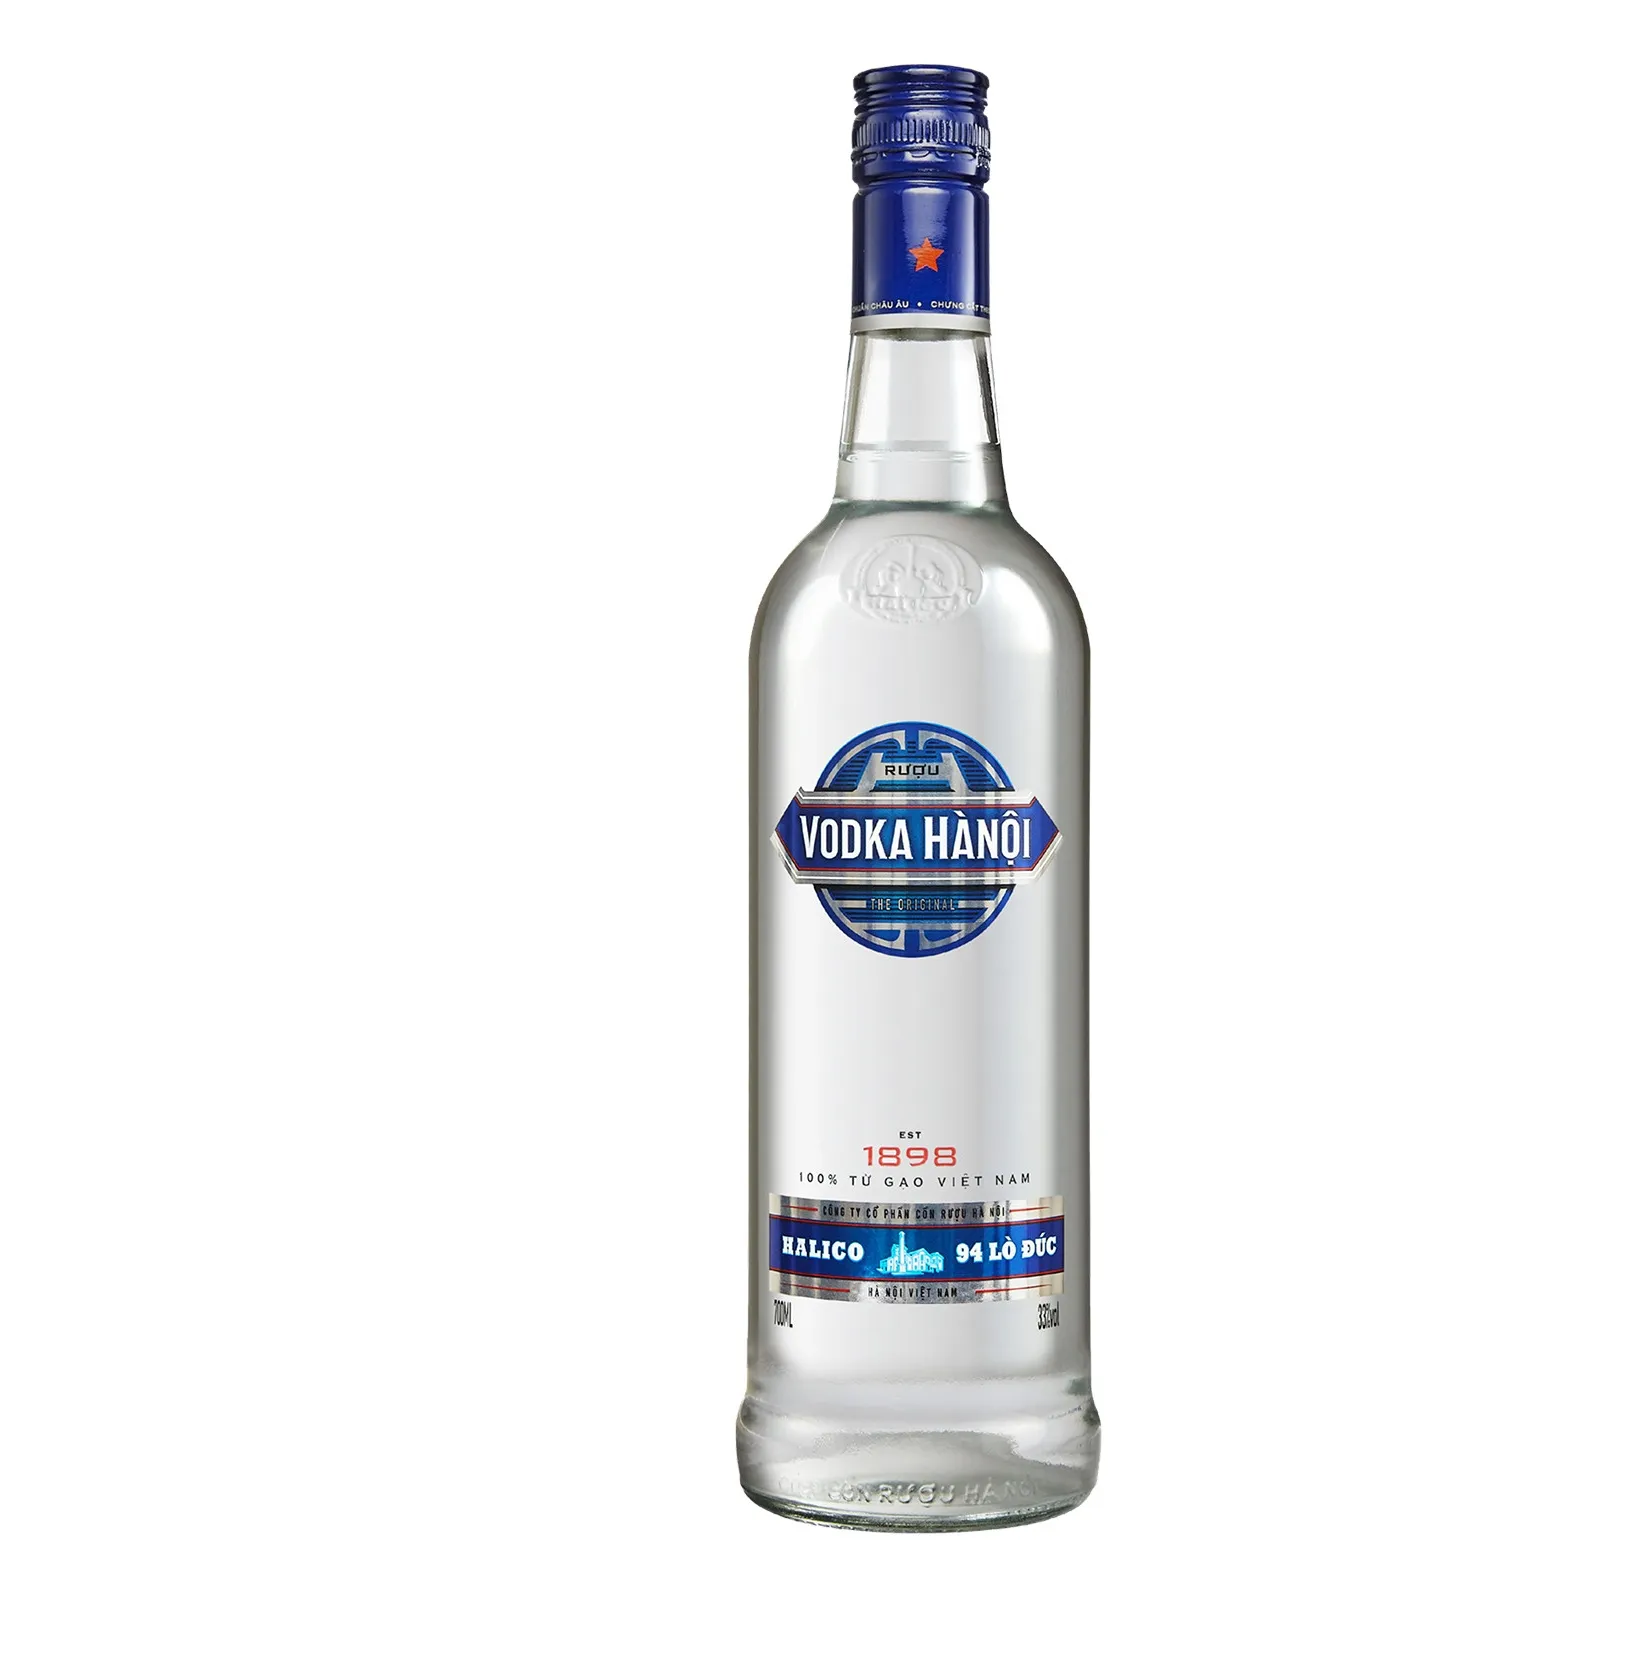 Wholesale Halico Supplier Vodka Hanoi 29.5%vol 300ml purest best Vietnamese grain spirits